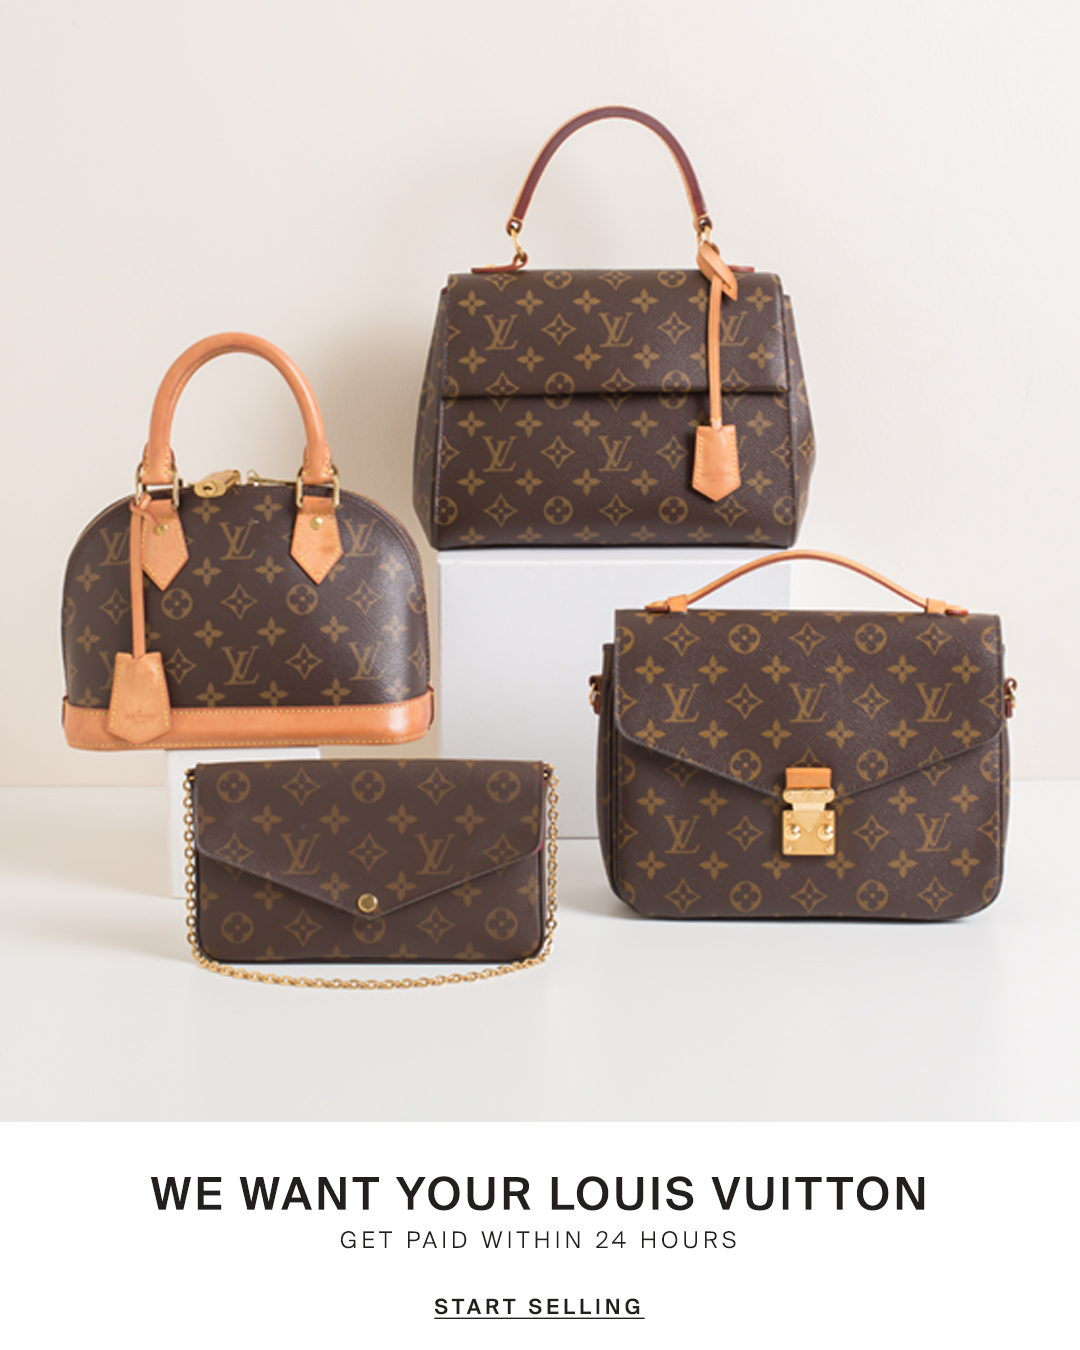 Jual Produk Louis Vuitton Terbaru Harga Murah